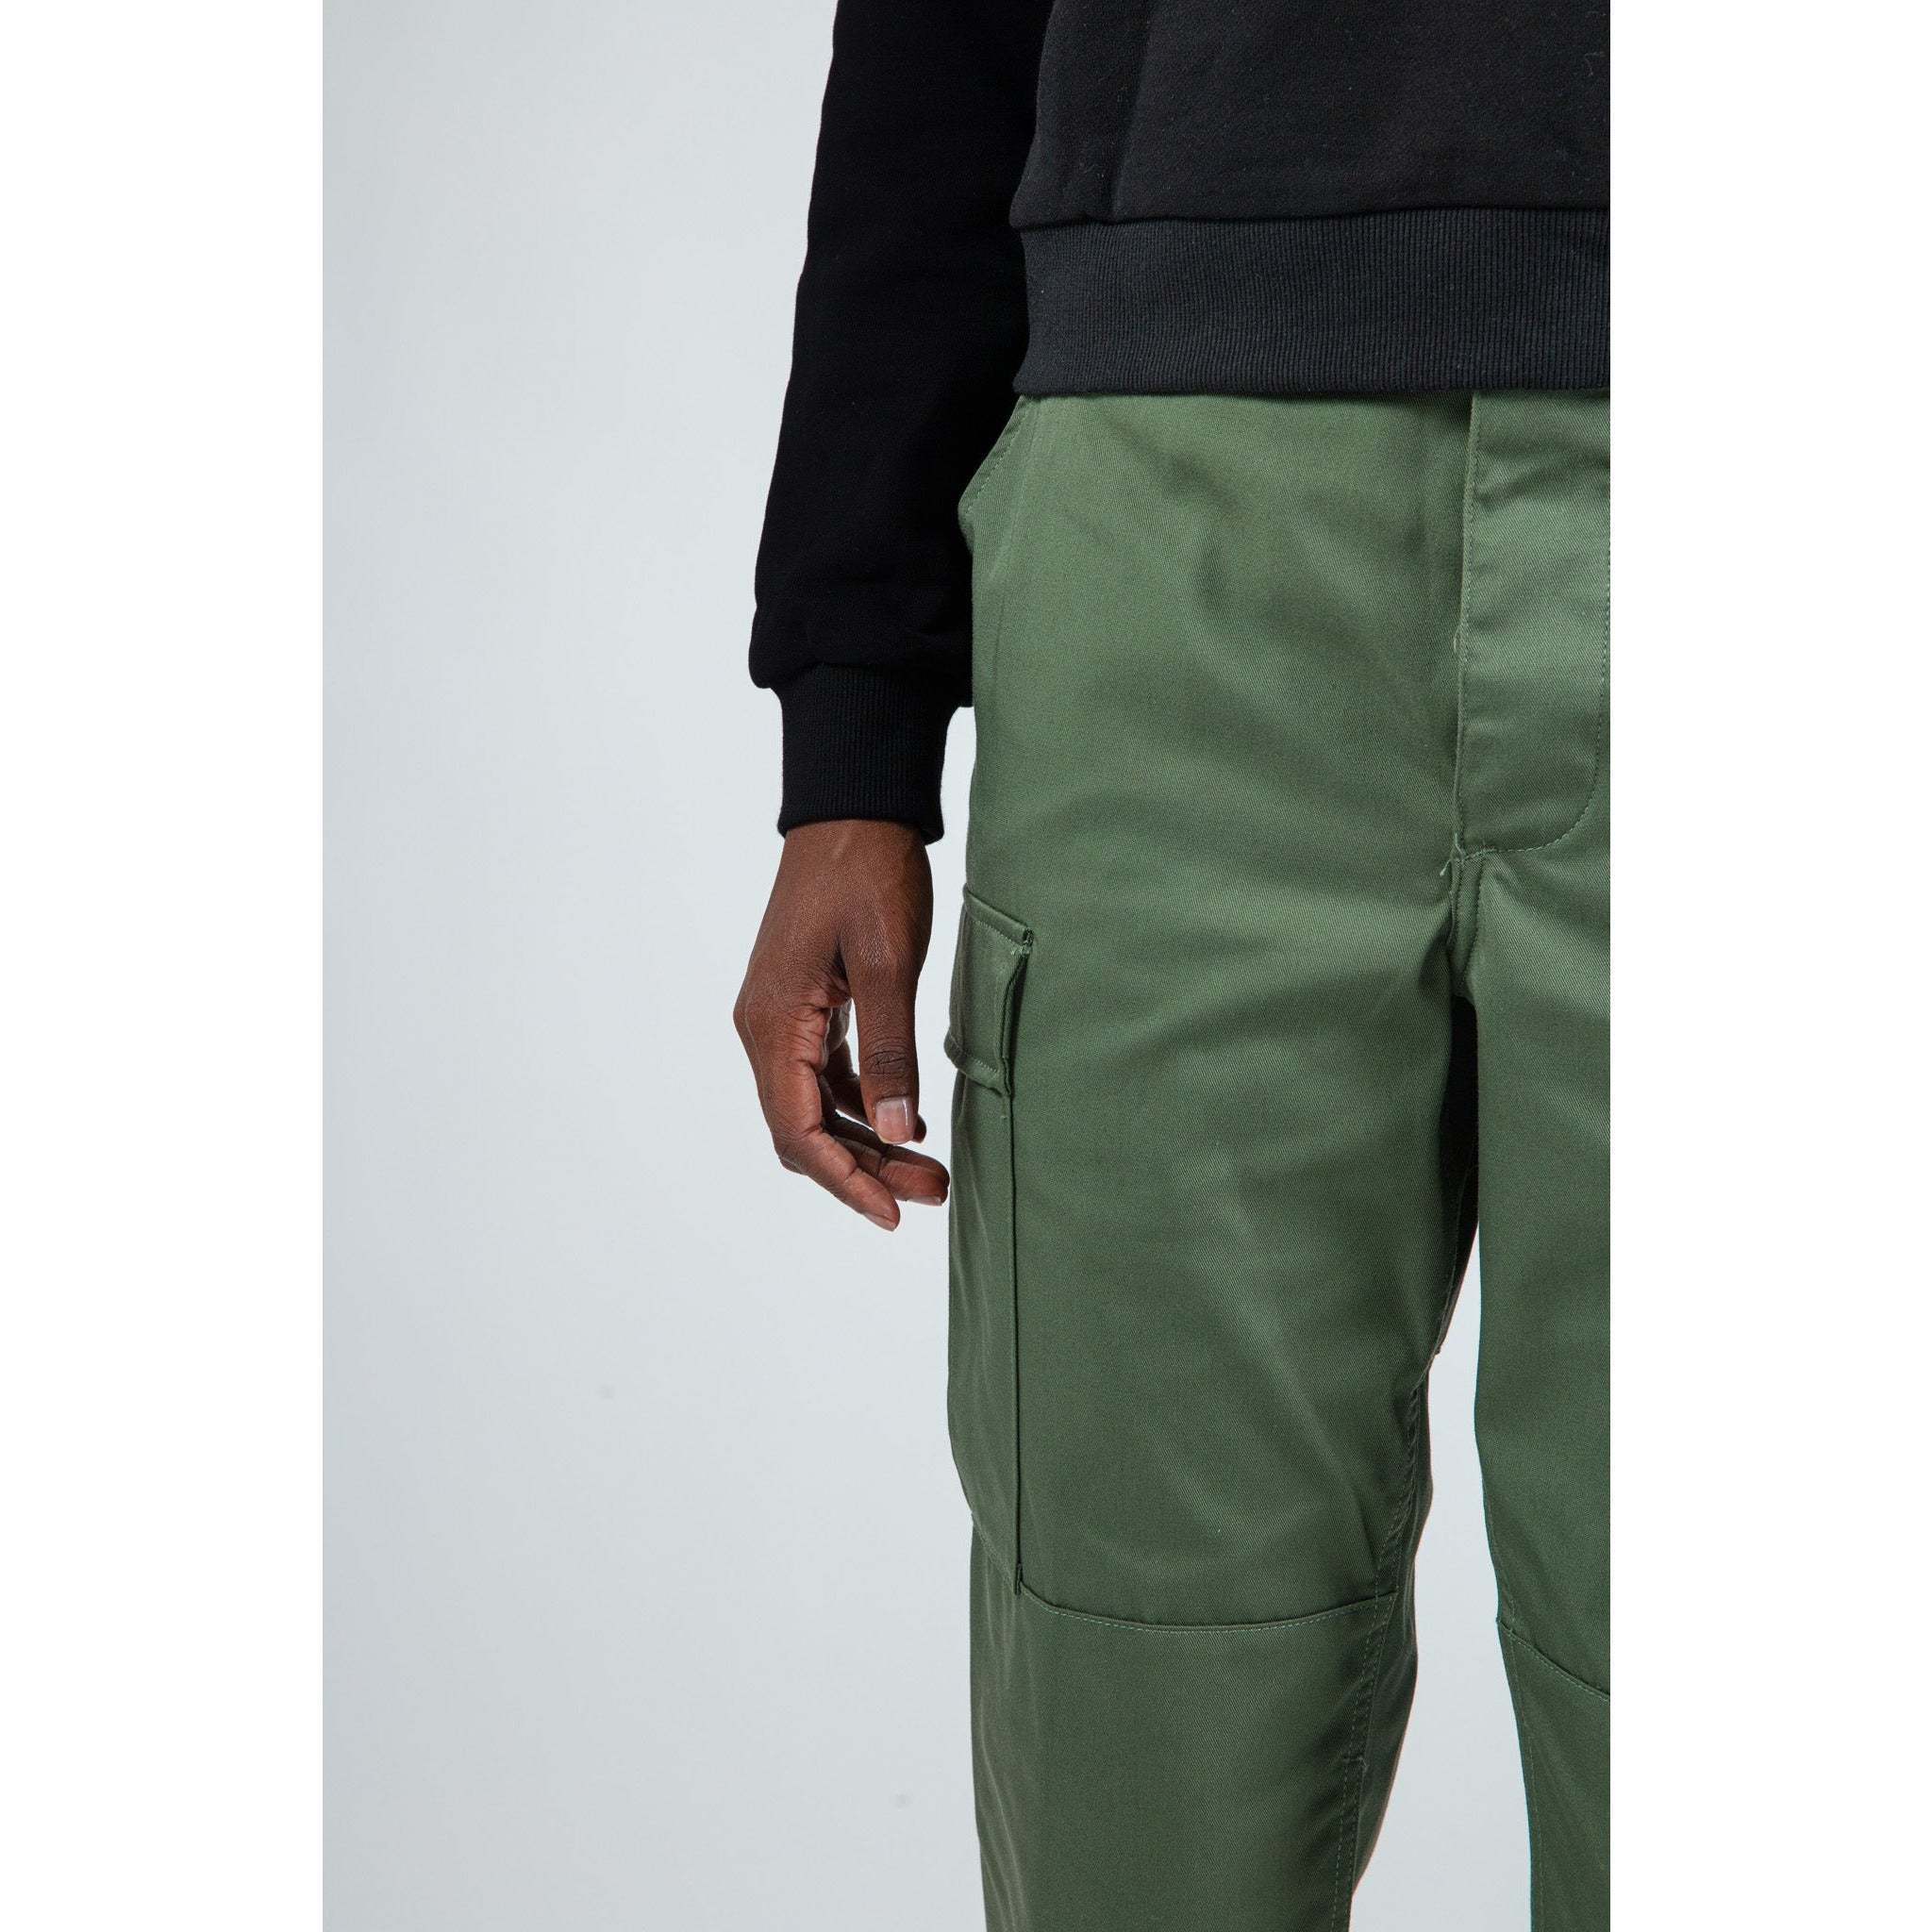 Amazon.com: Men's Dress Pants,Athletic Pants for Men Work Pants for Men  Cargo Pocket Dress Joggers tech wear Pants Mens Sweatpants : Clothing,  Shoes & Jewelry